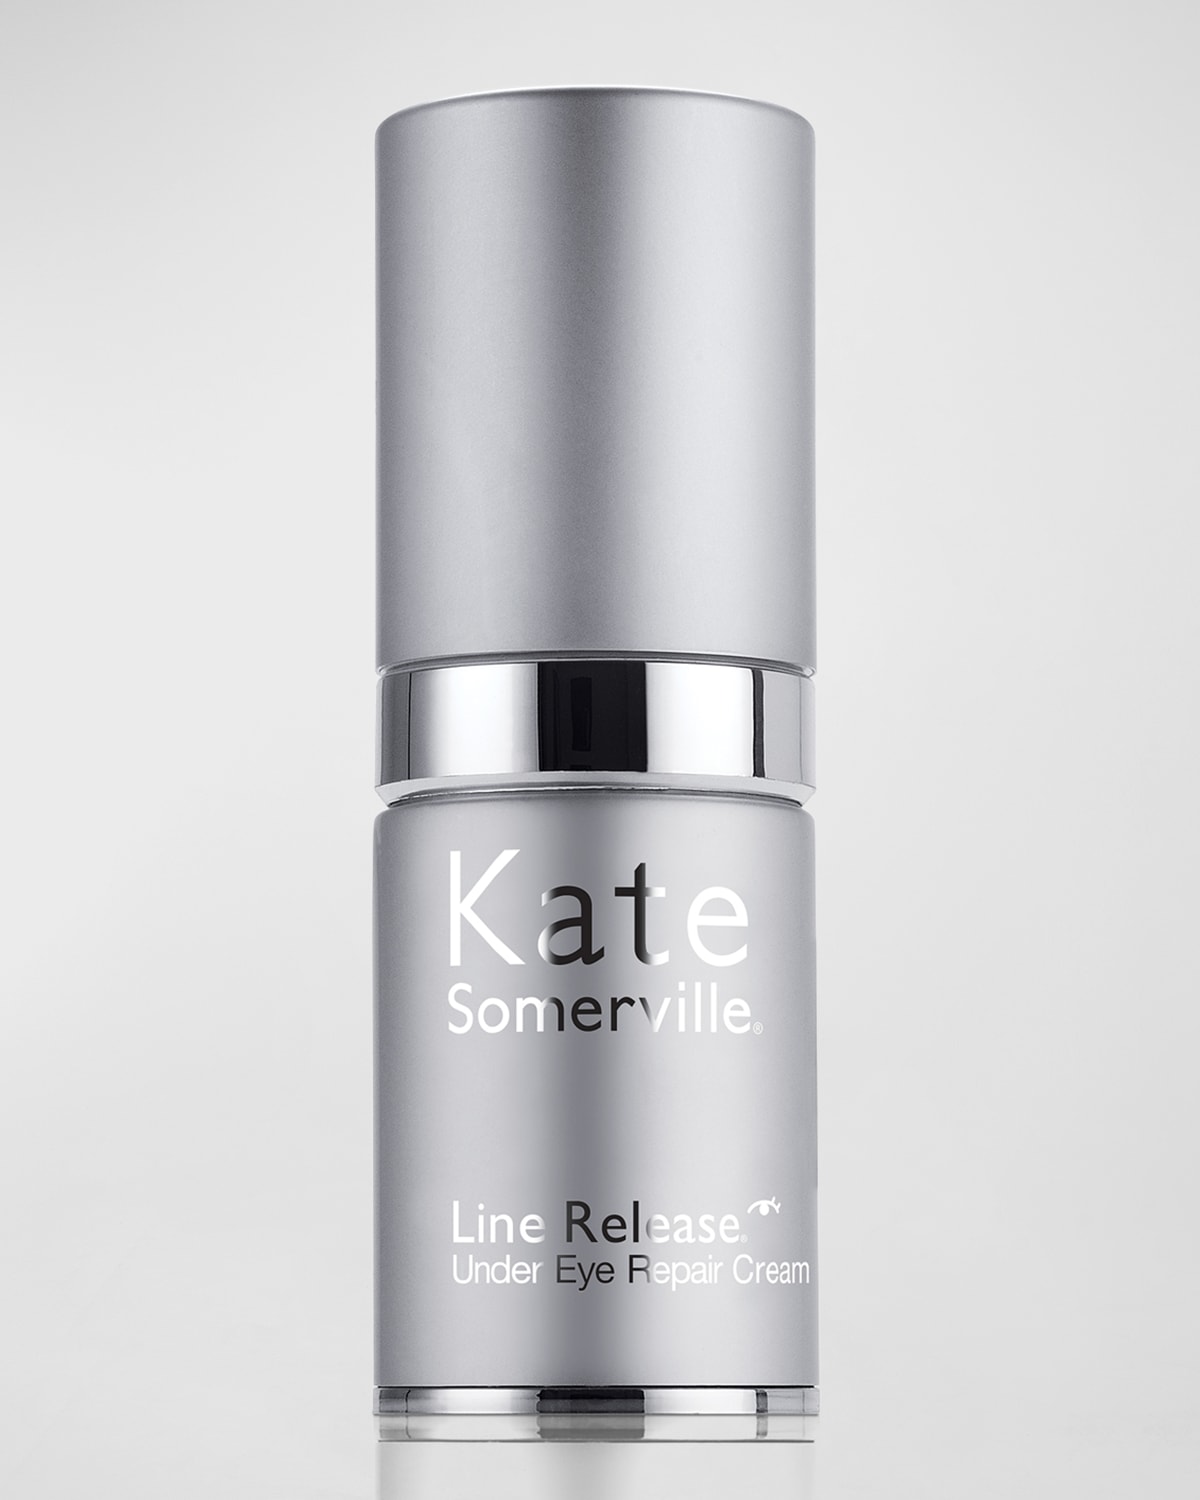 Kate Somerville 0.5 oz. Line Release Under Eye Repair Cream